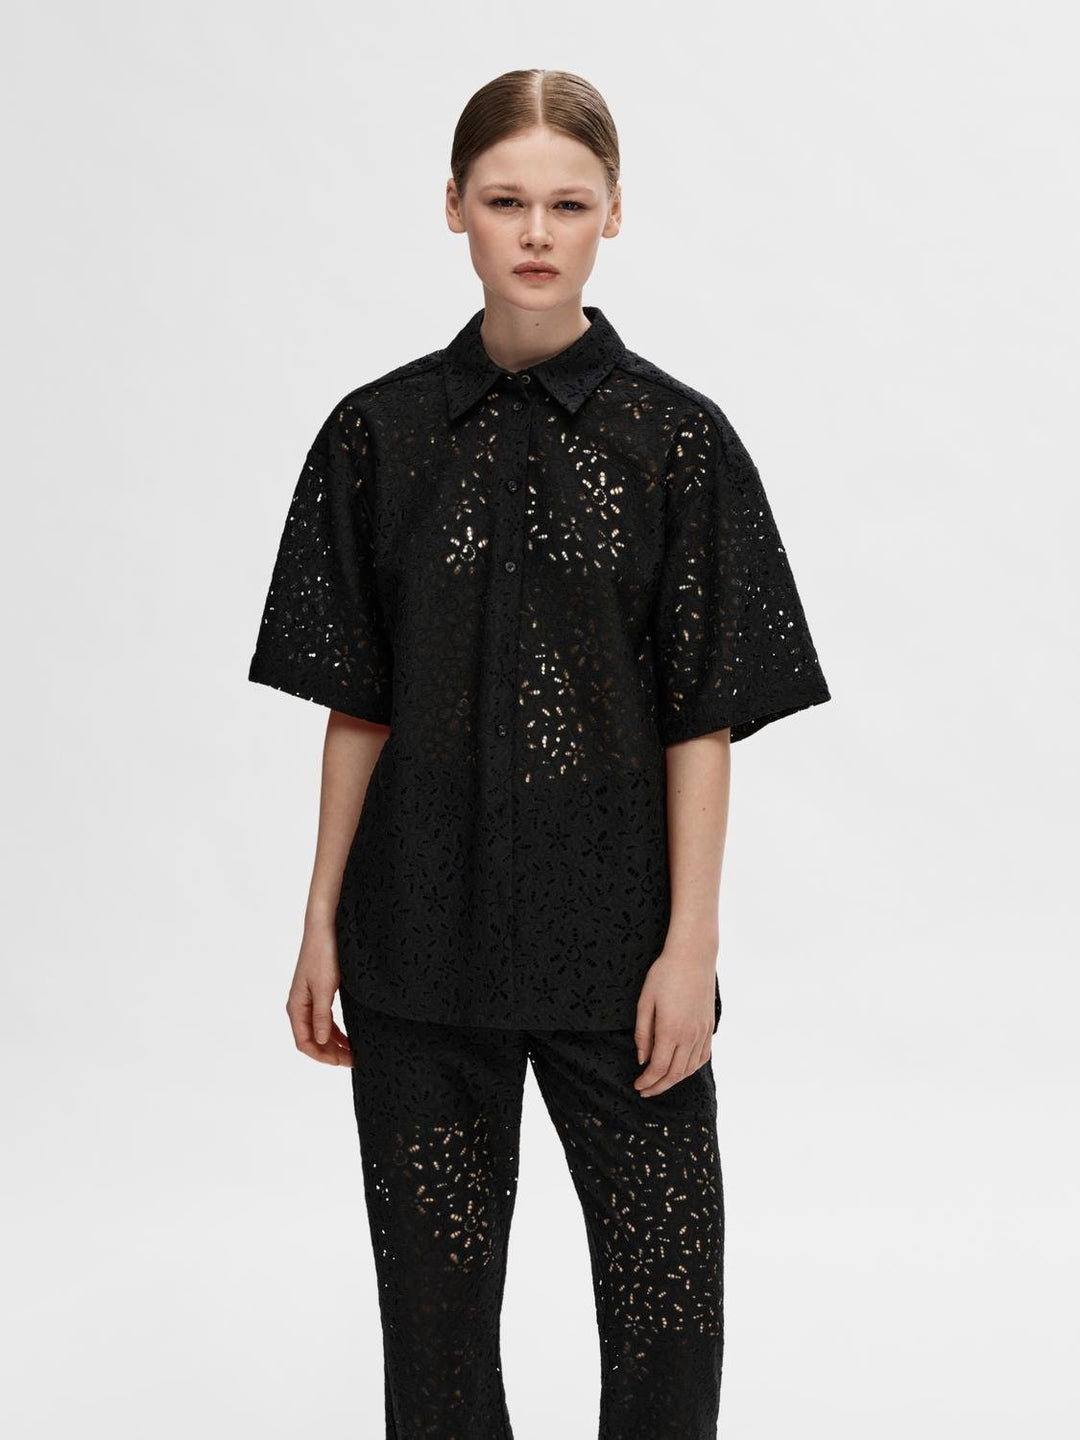 Karola 2/4 Oversize Lace Shirt B Black | Skjorter og bluser | Smuk - Dameklær på nett